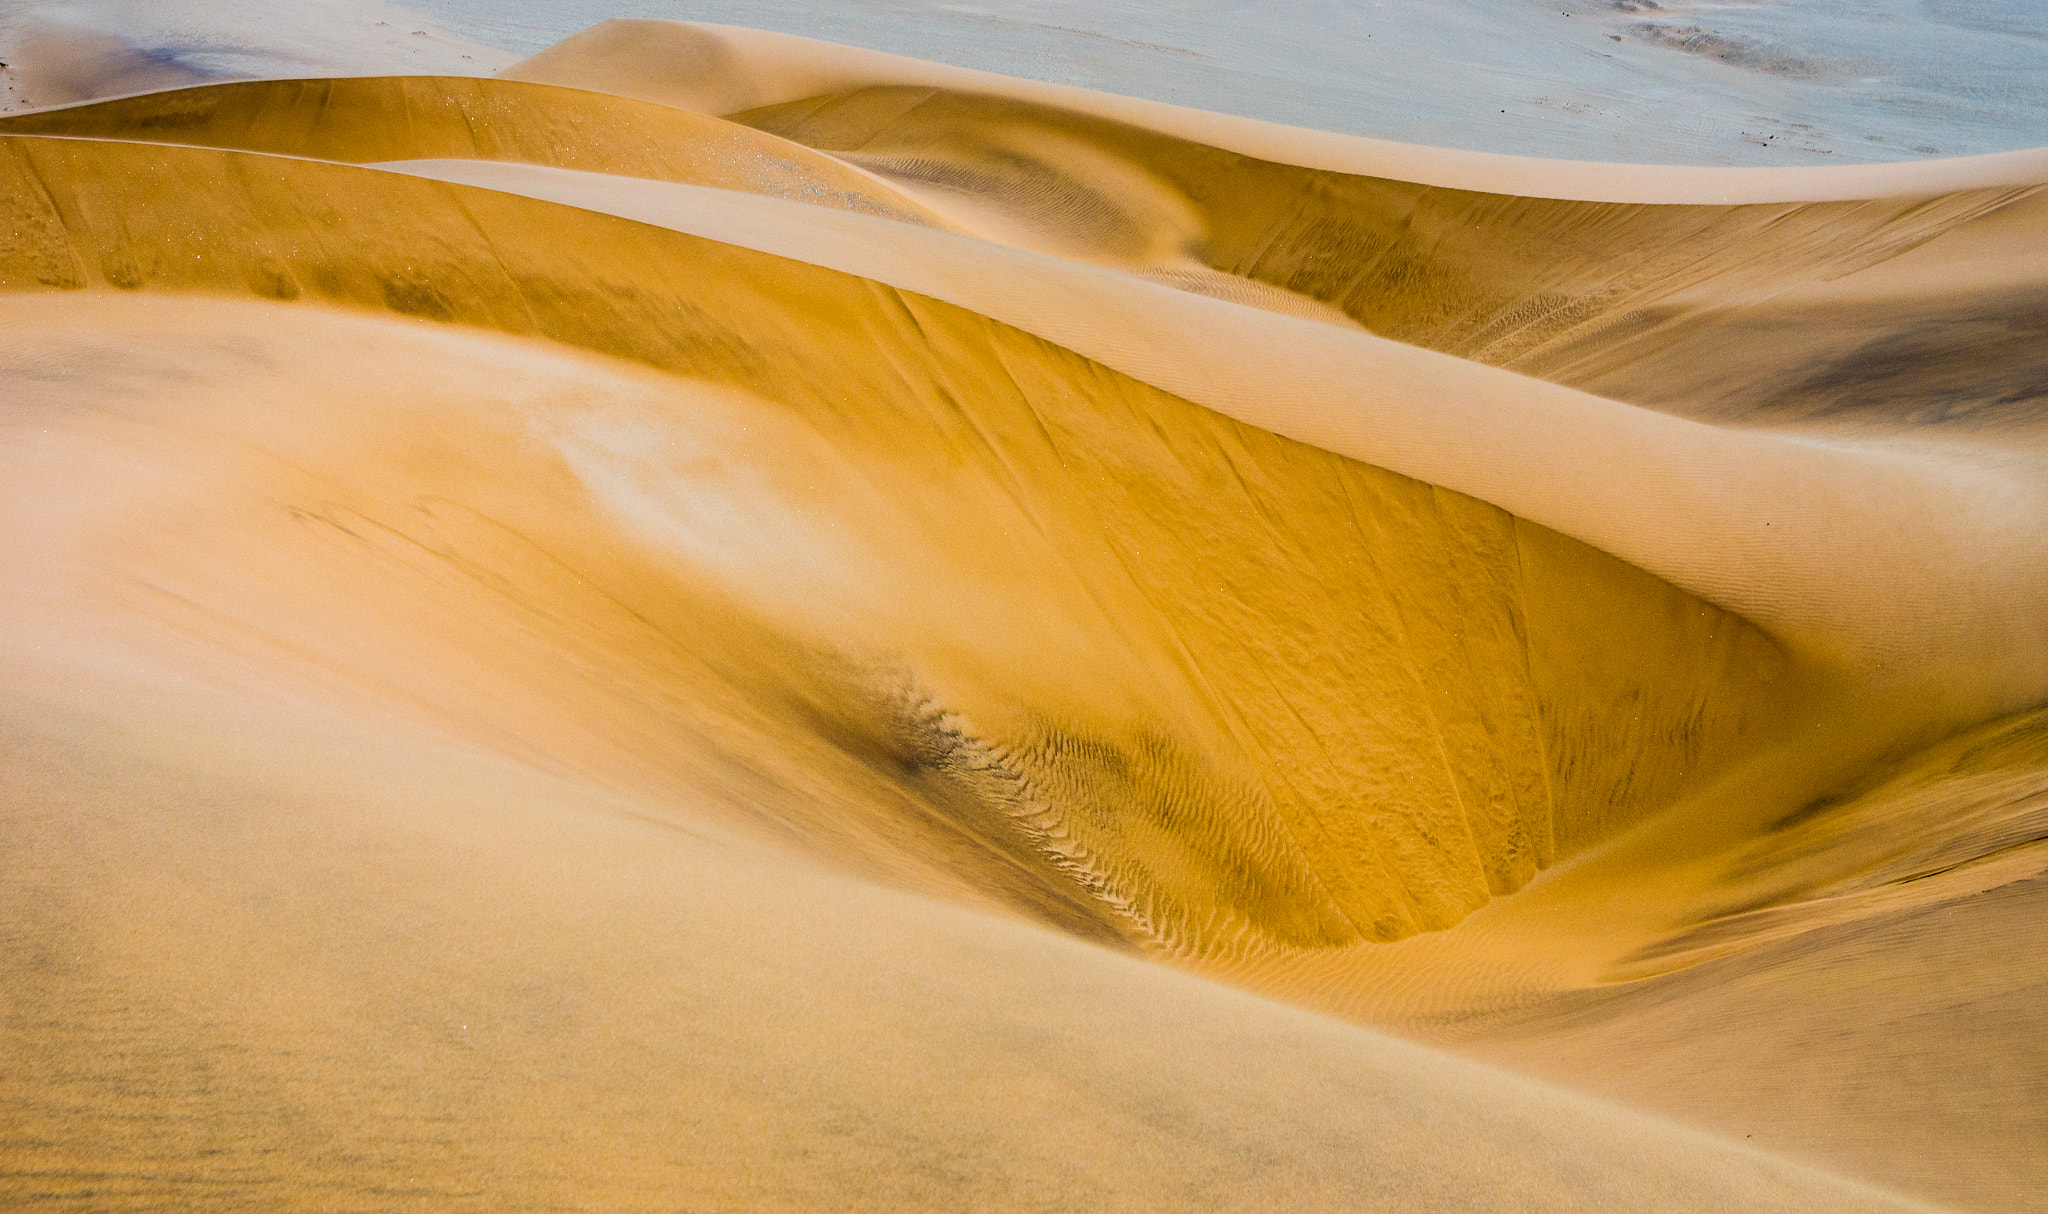 Pentax K-5 sample photo. Namib desert, namibia photography